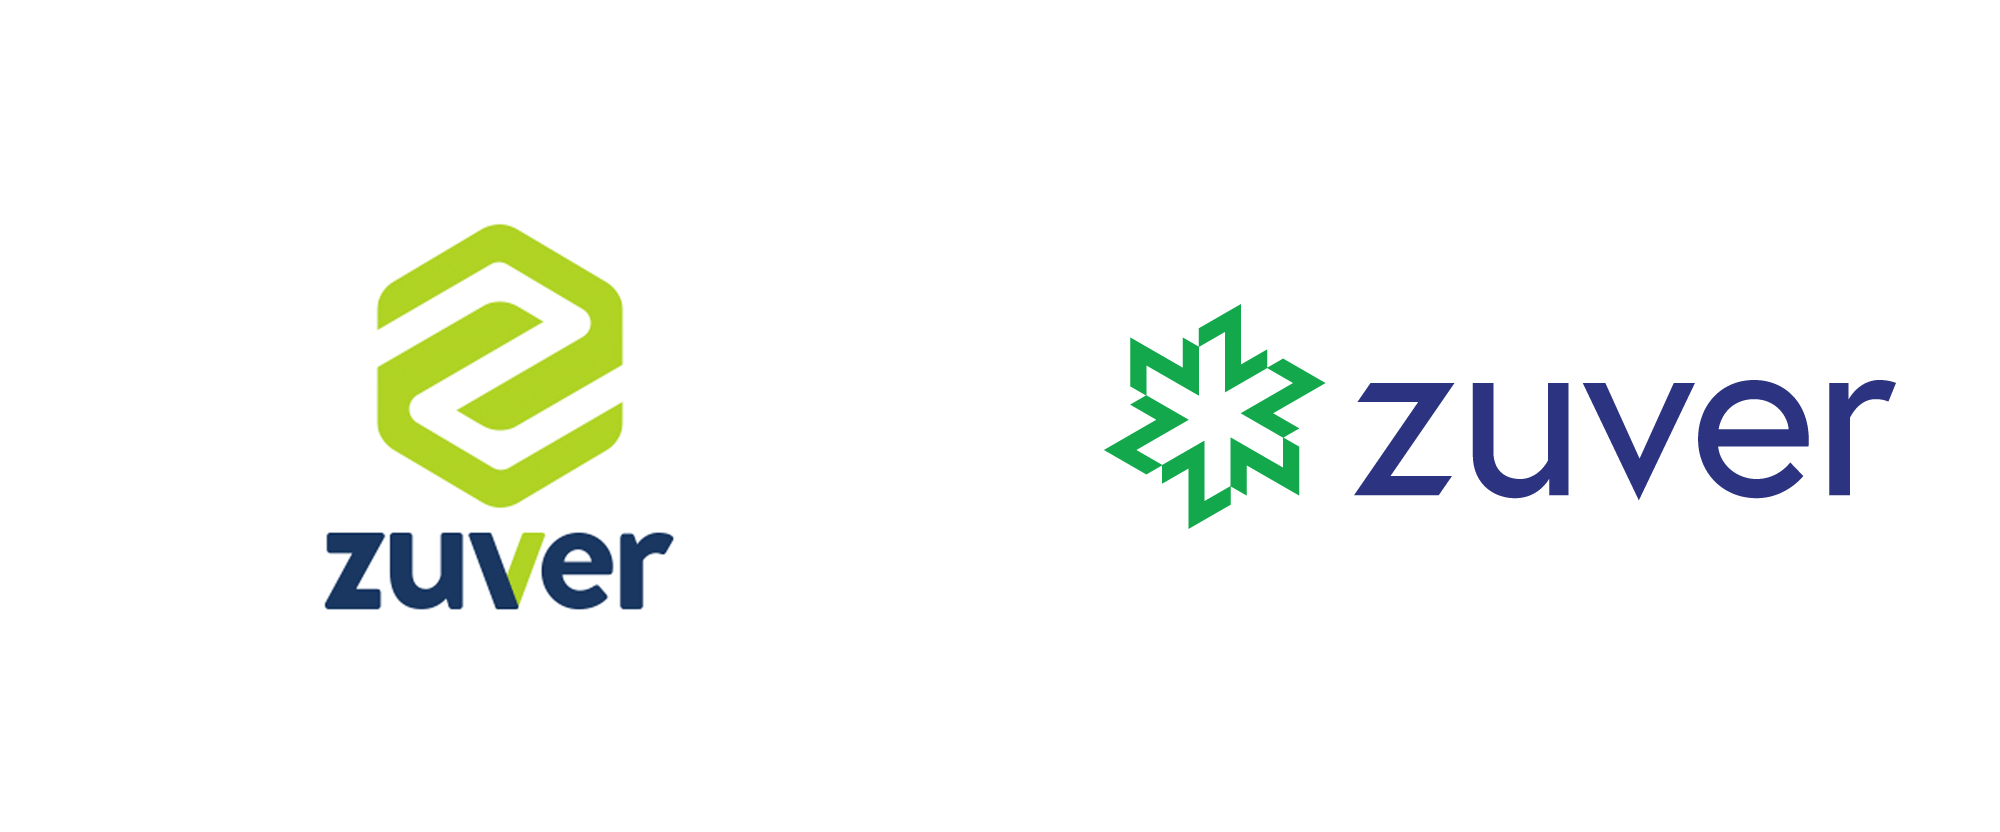 New Logo for Zuver